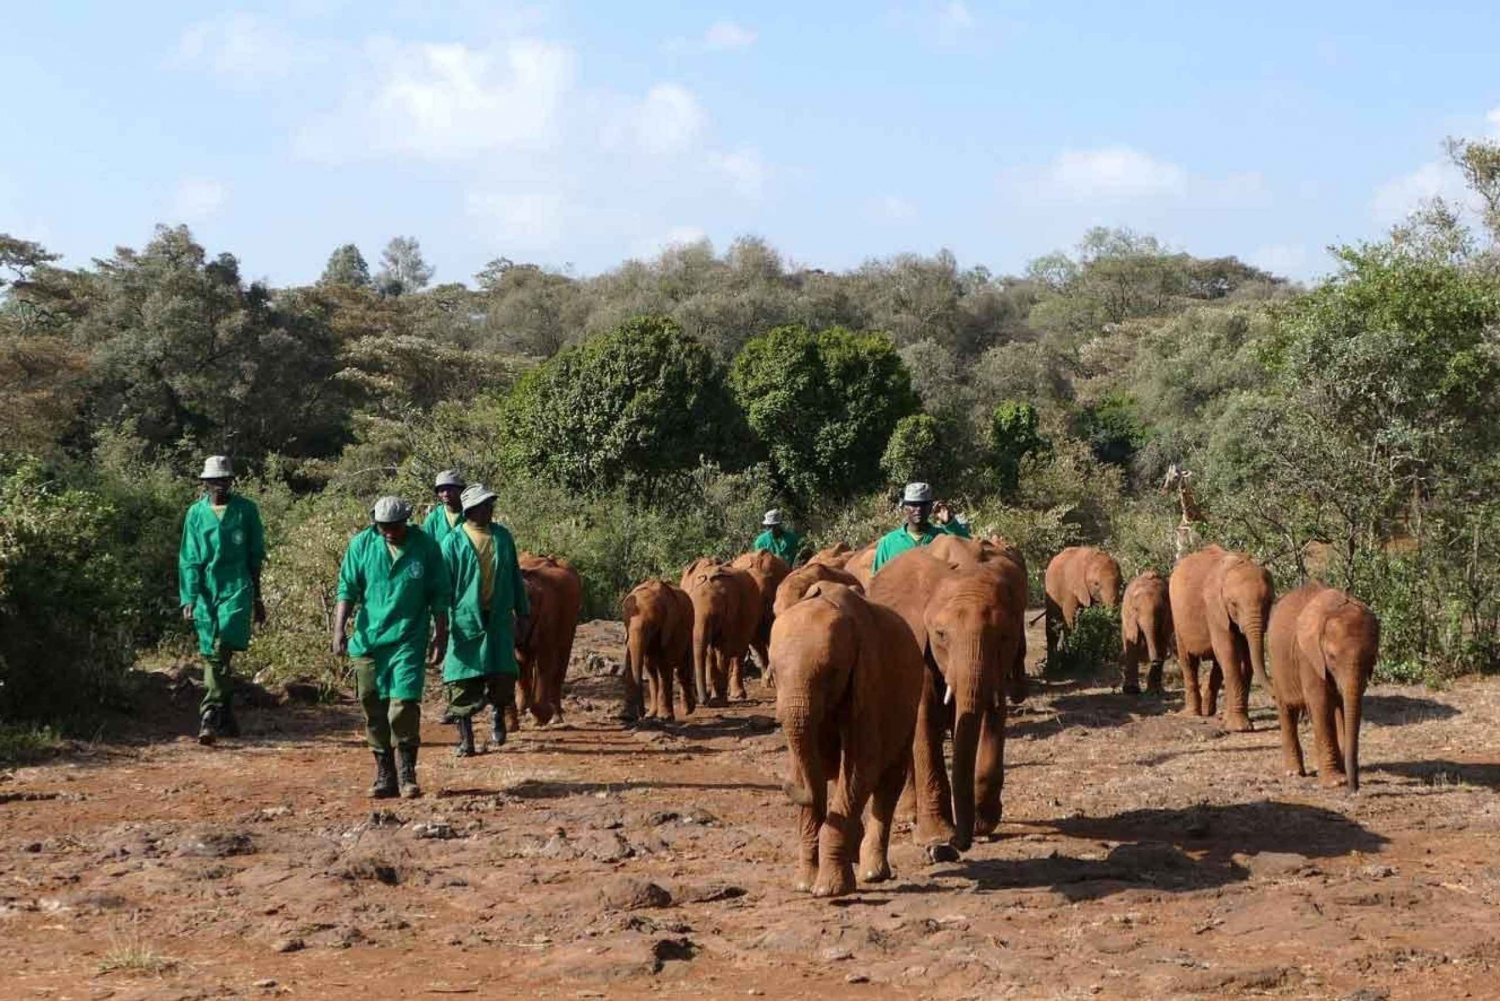 Excursiones de un día al Parque Nacional de Nairobi y al Orfanato de Elefantes